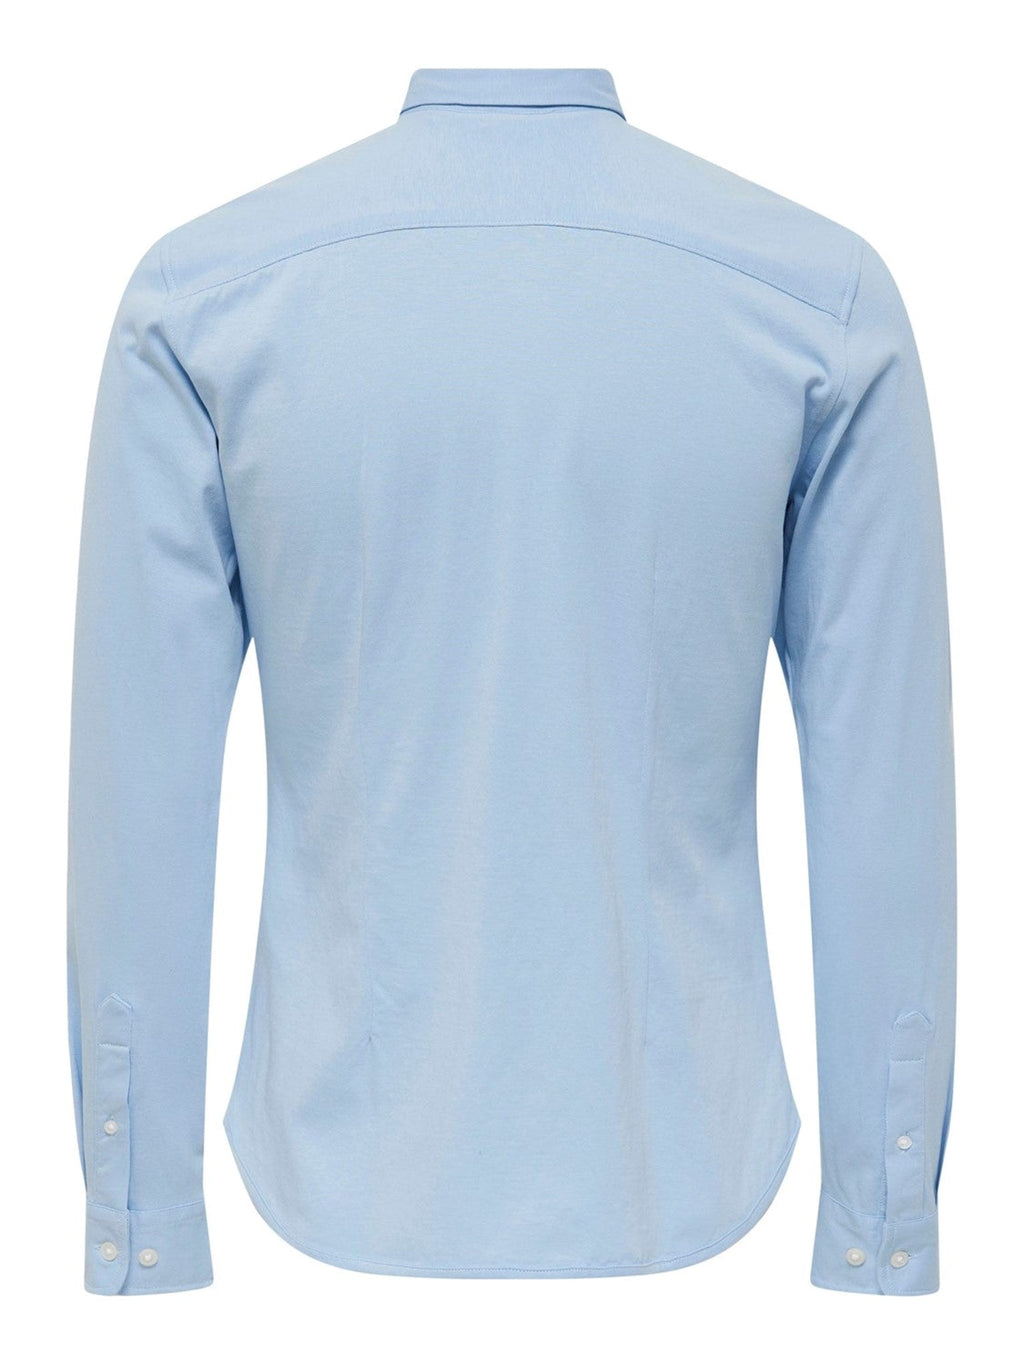 Miglia Stretch Shirt - Cashmere Blue